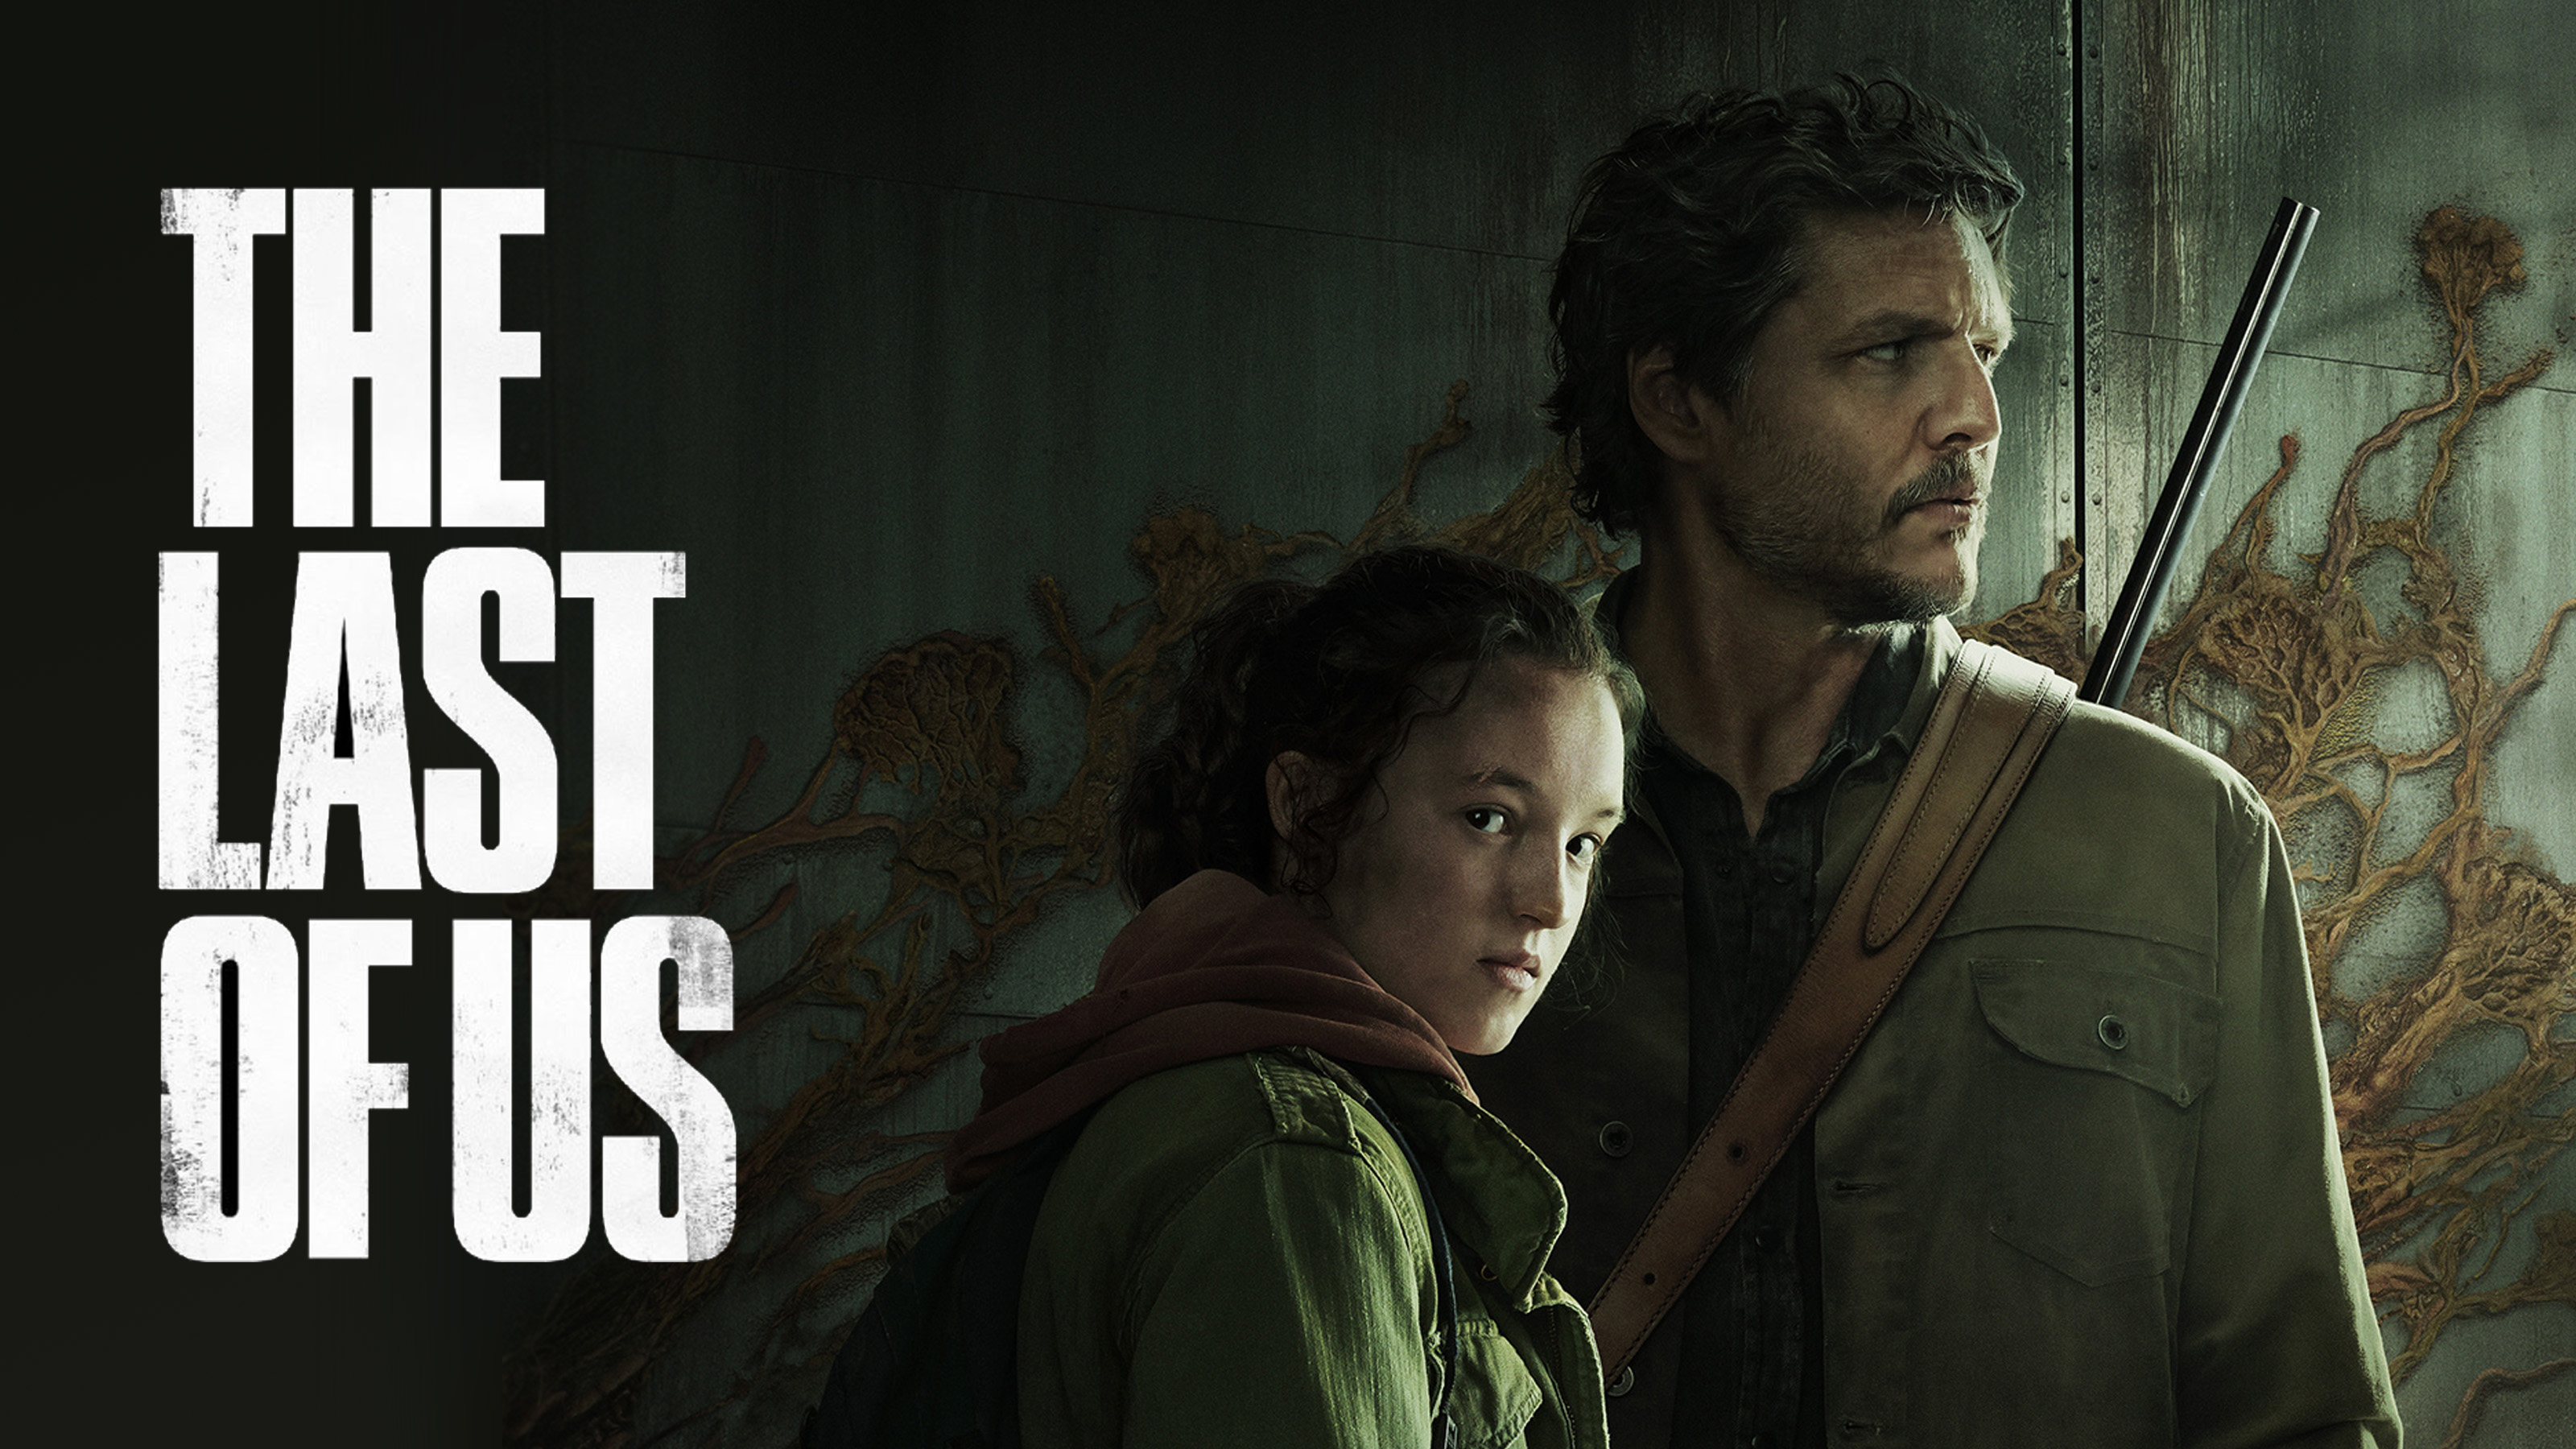 Una foto promocional de Joel y Ellie de la serie Last of Us con el logo sobre un fondo oscuro